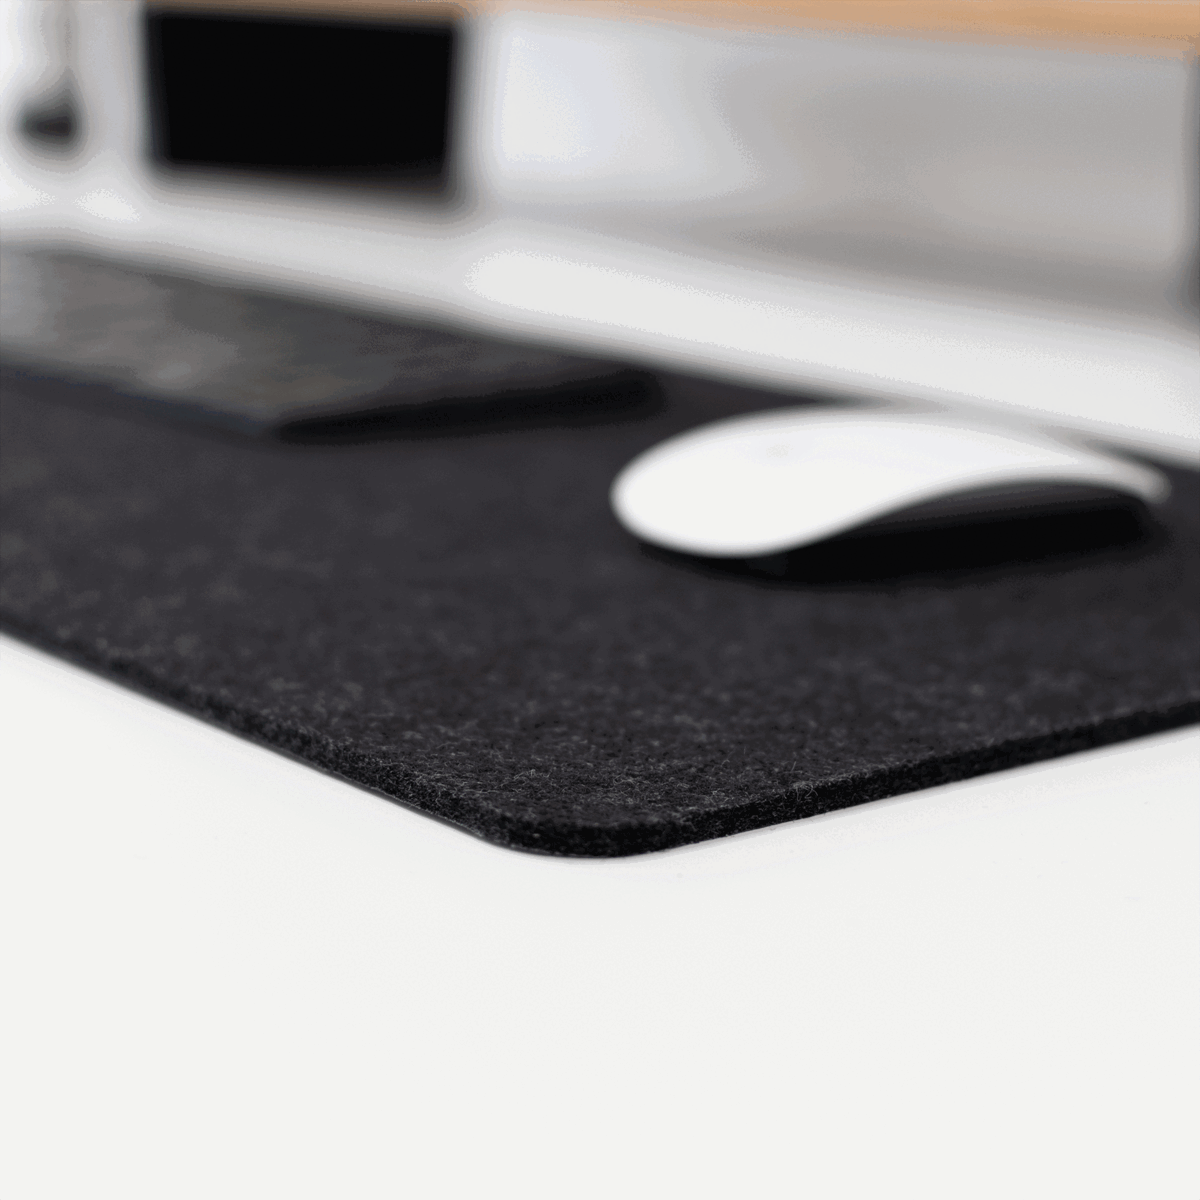 Desk Mat Filz Desktopmatte Schreibtischunterlage Auflage Mauspad Tastaturpad Desk Pad Felt